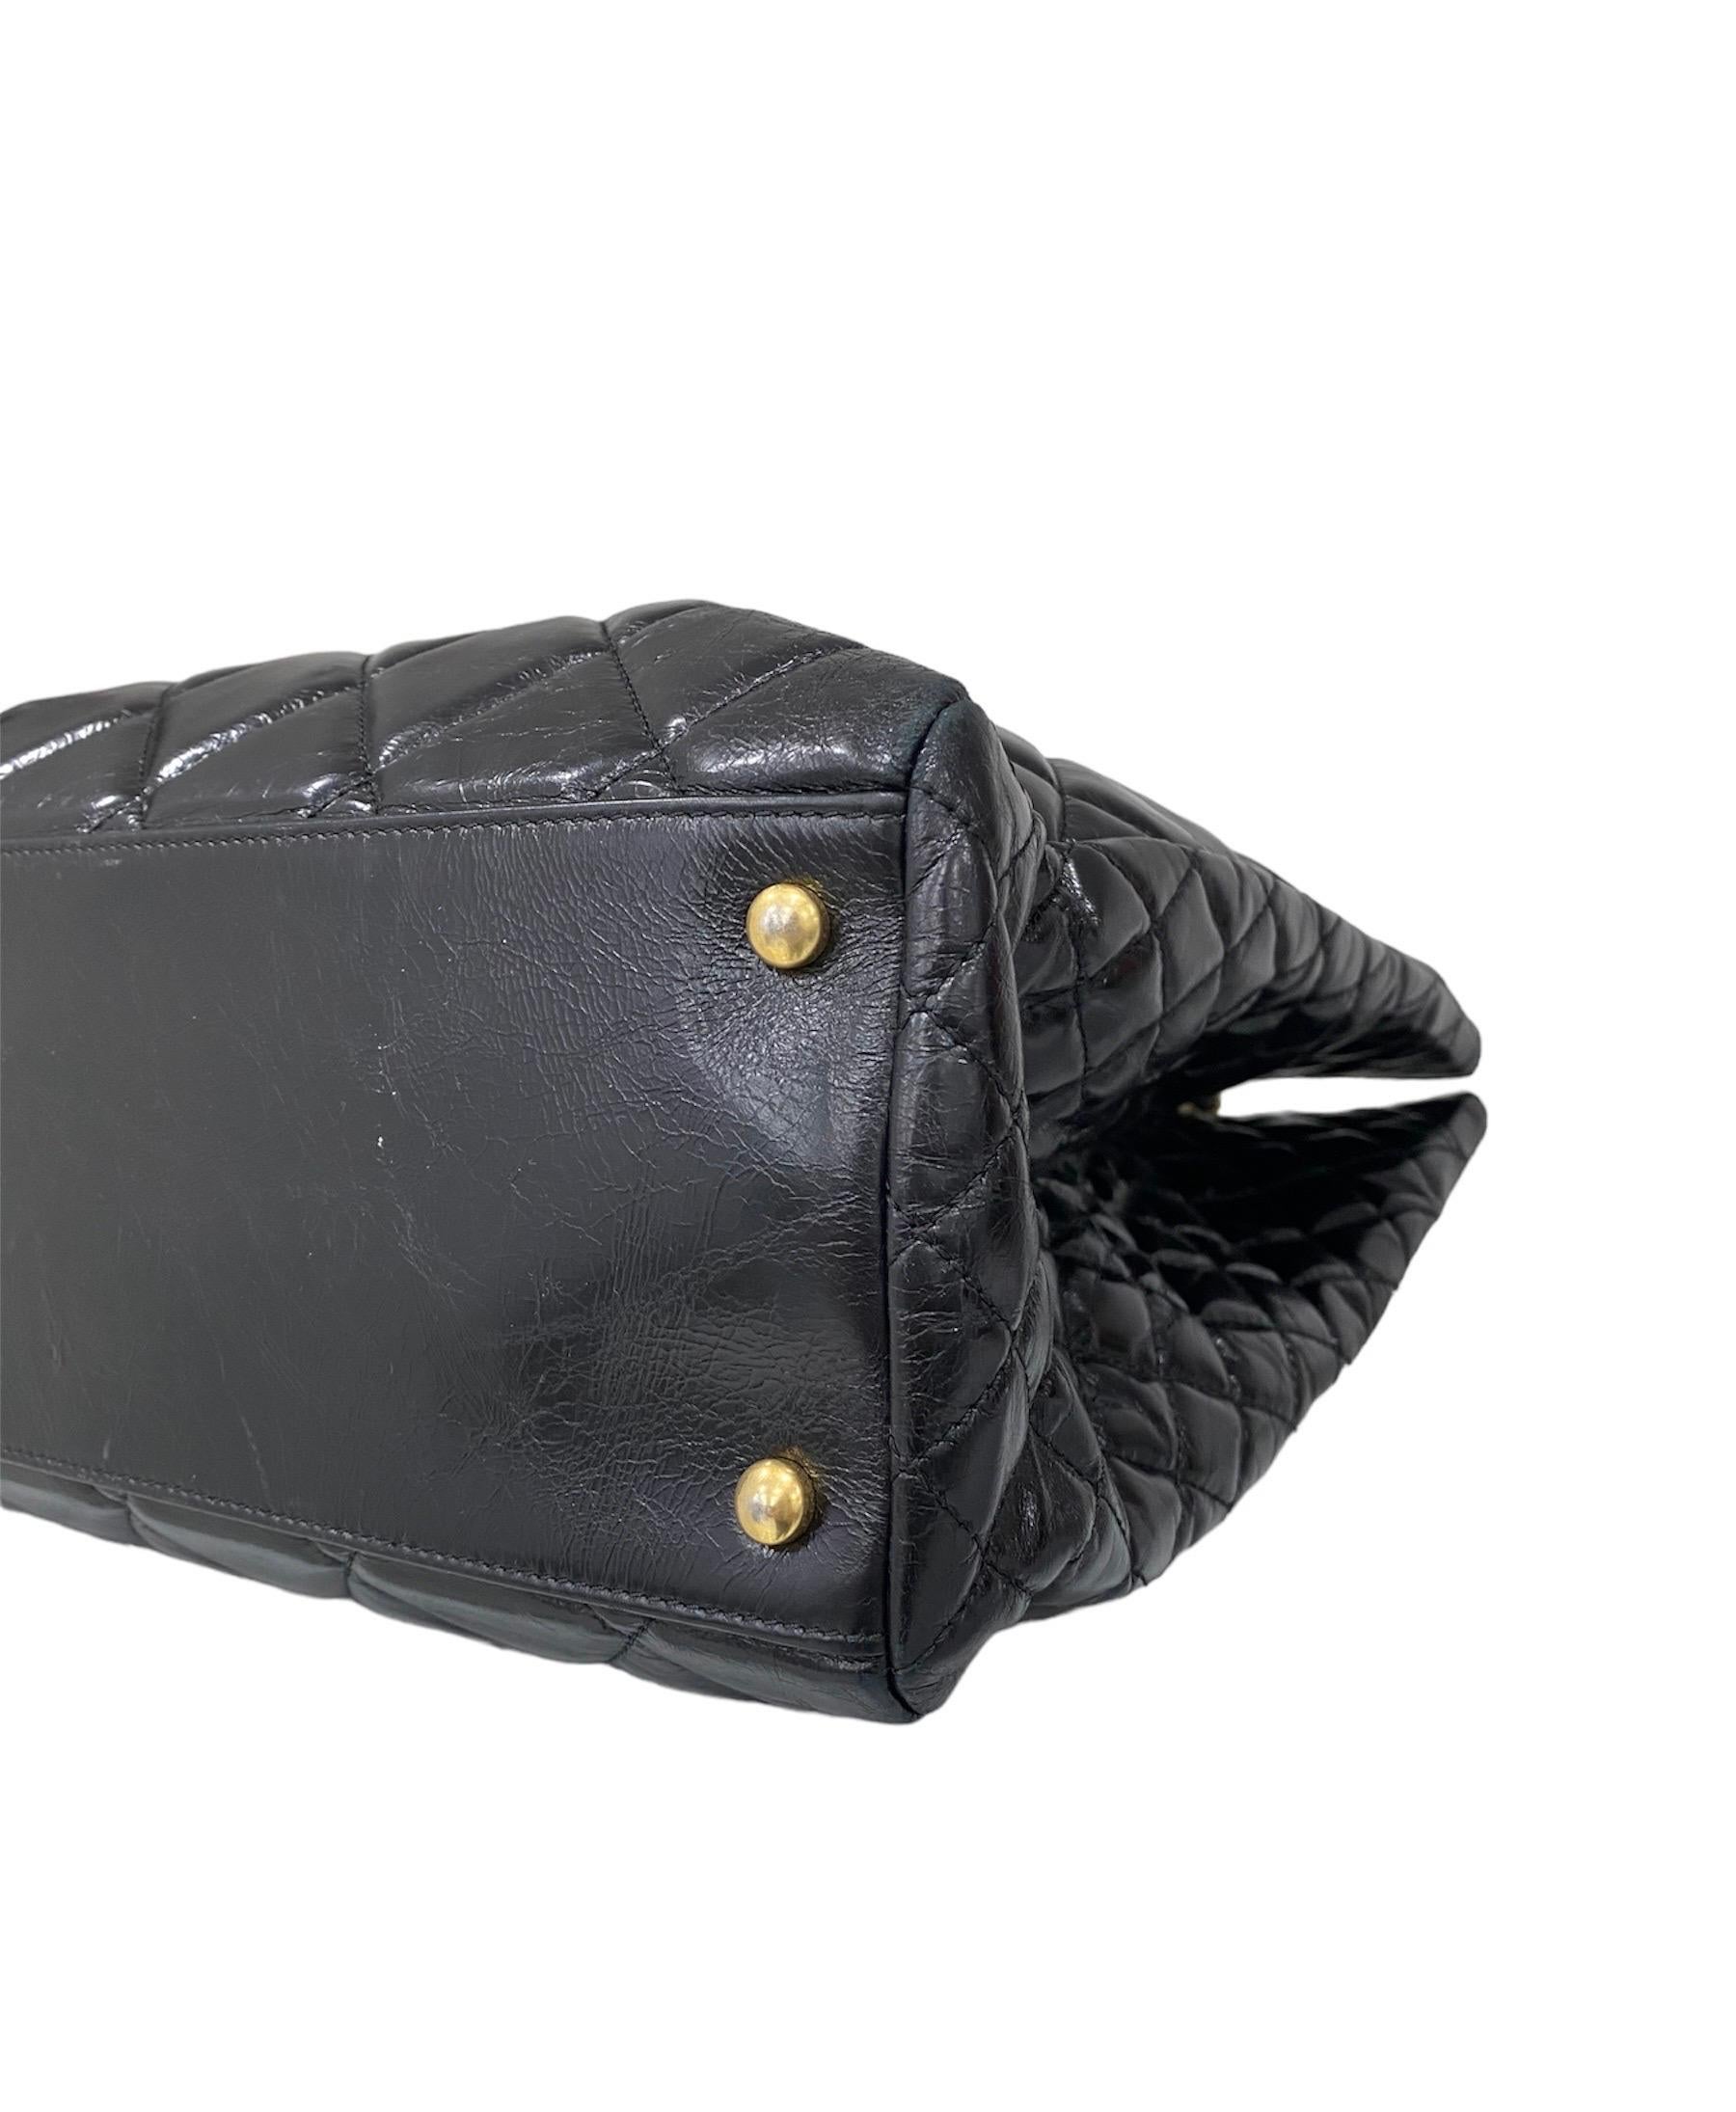 2016 Chanel Shopper Bag Black Shoulder Bag 2